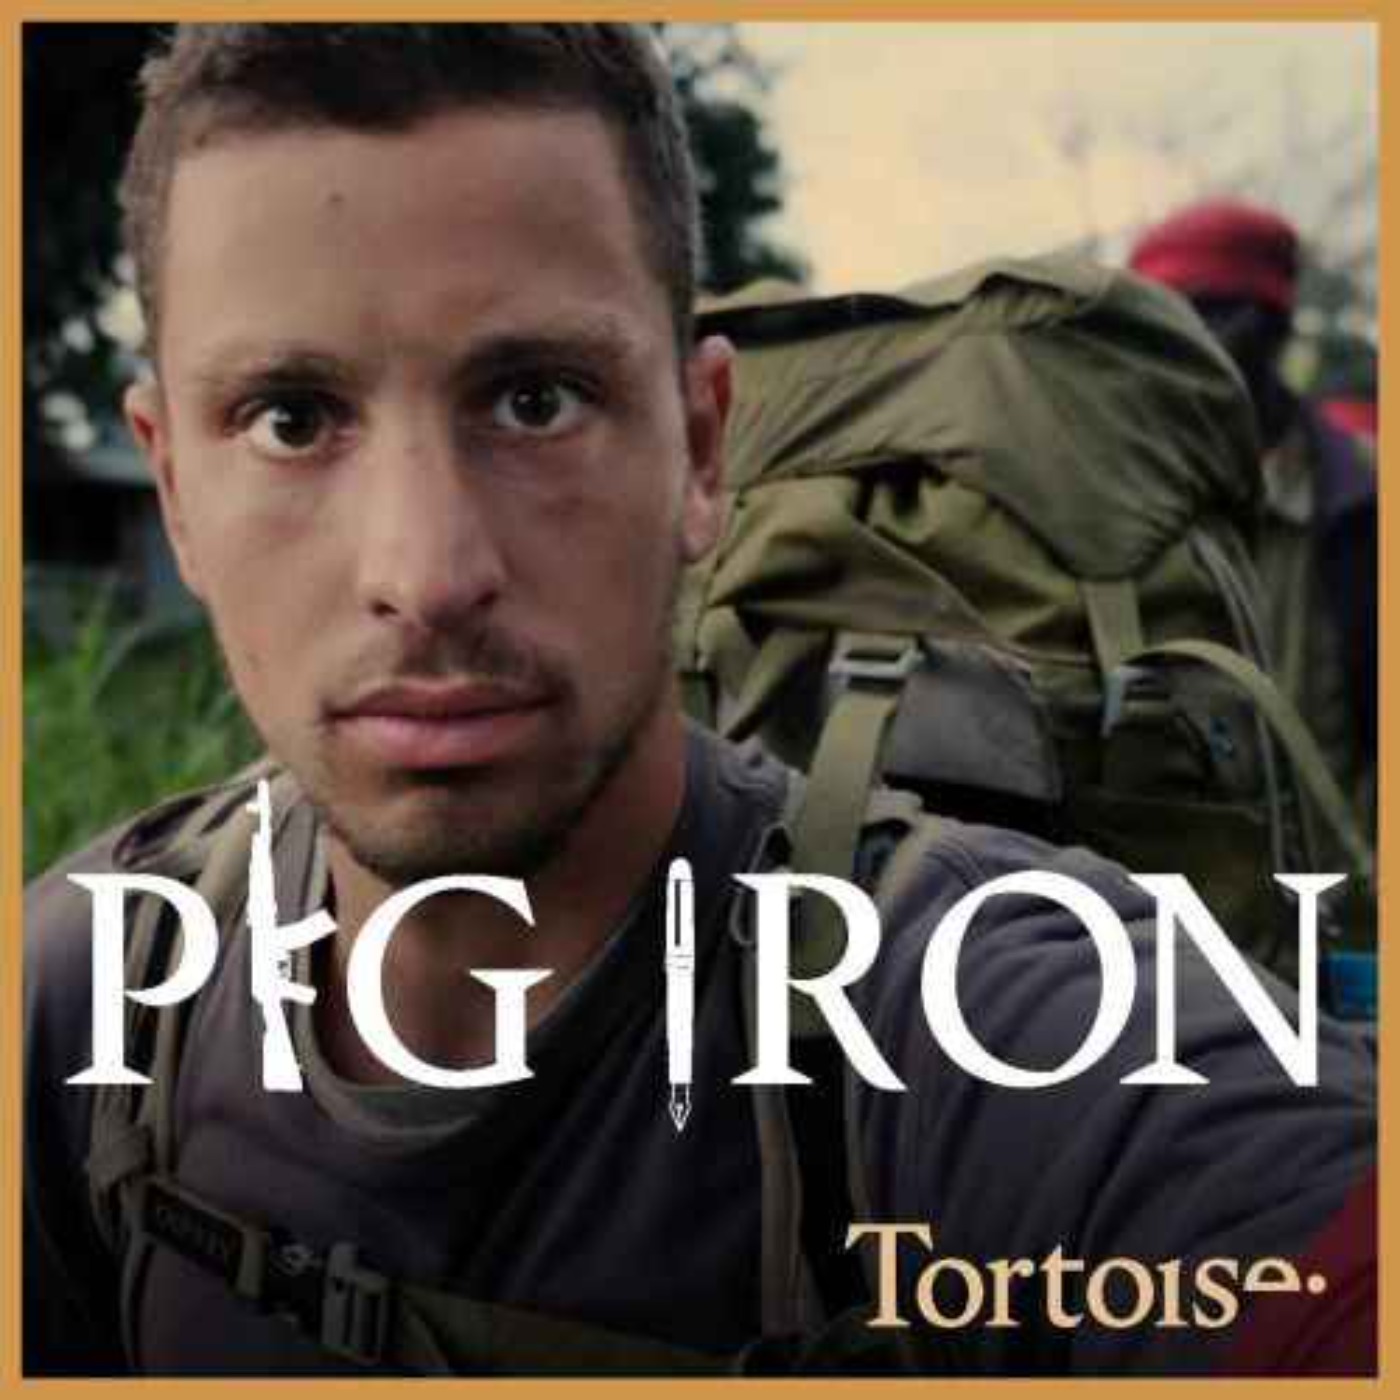 Introducing: Pig Iron